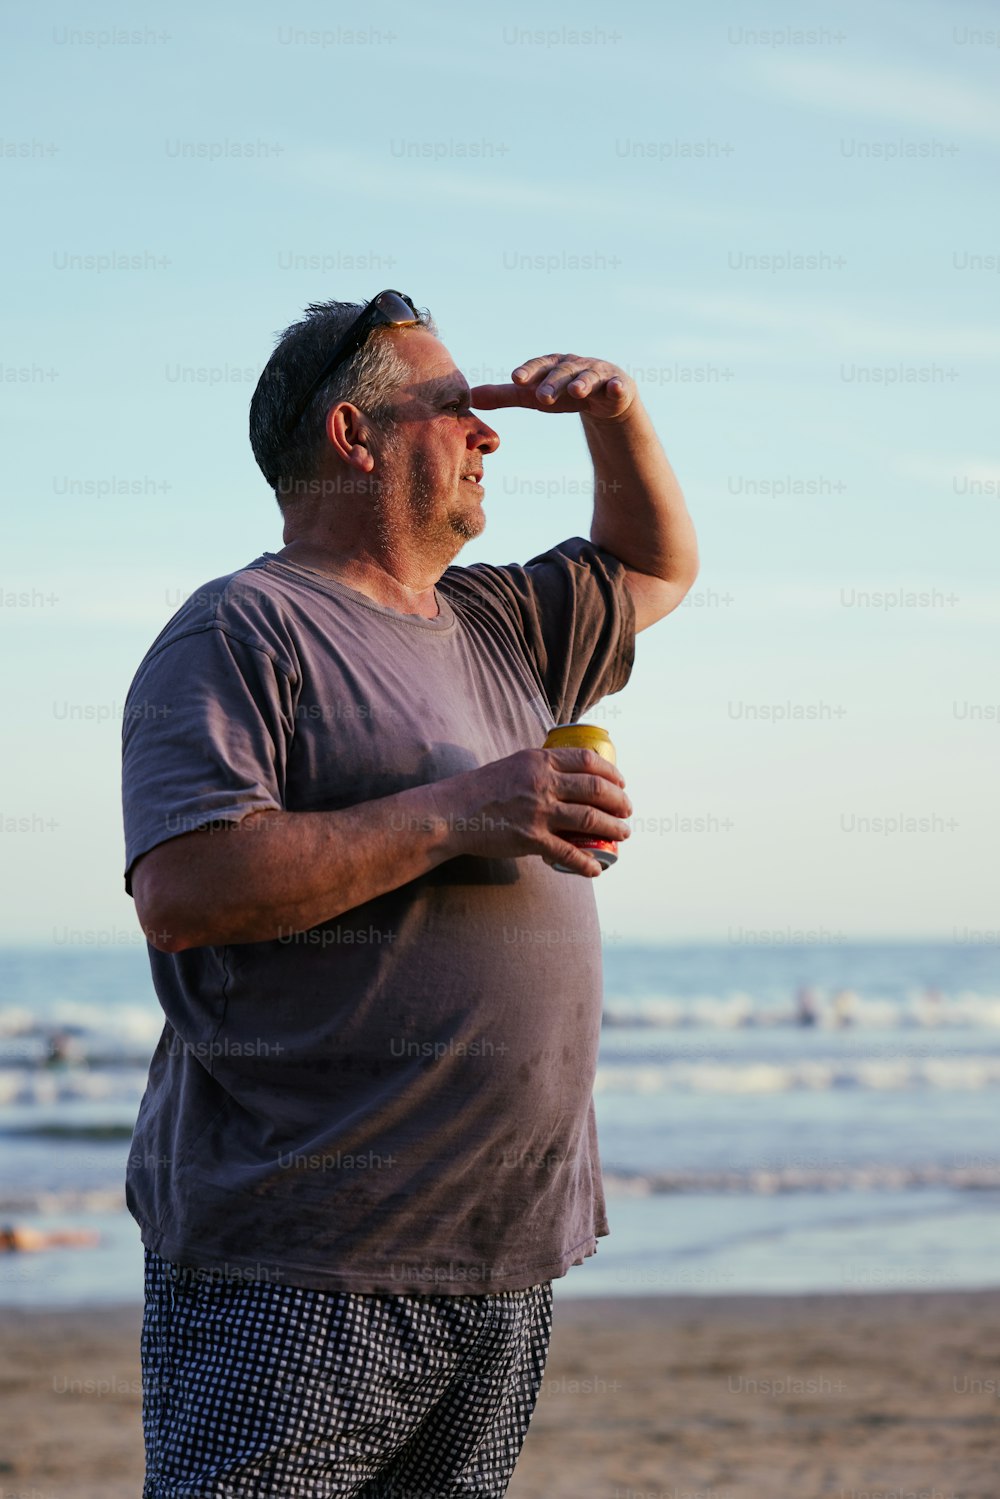 Un uomo in piedi su una spiaggia con in mano un frisbee giallo